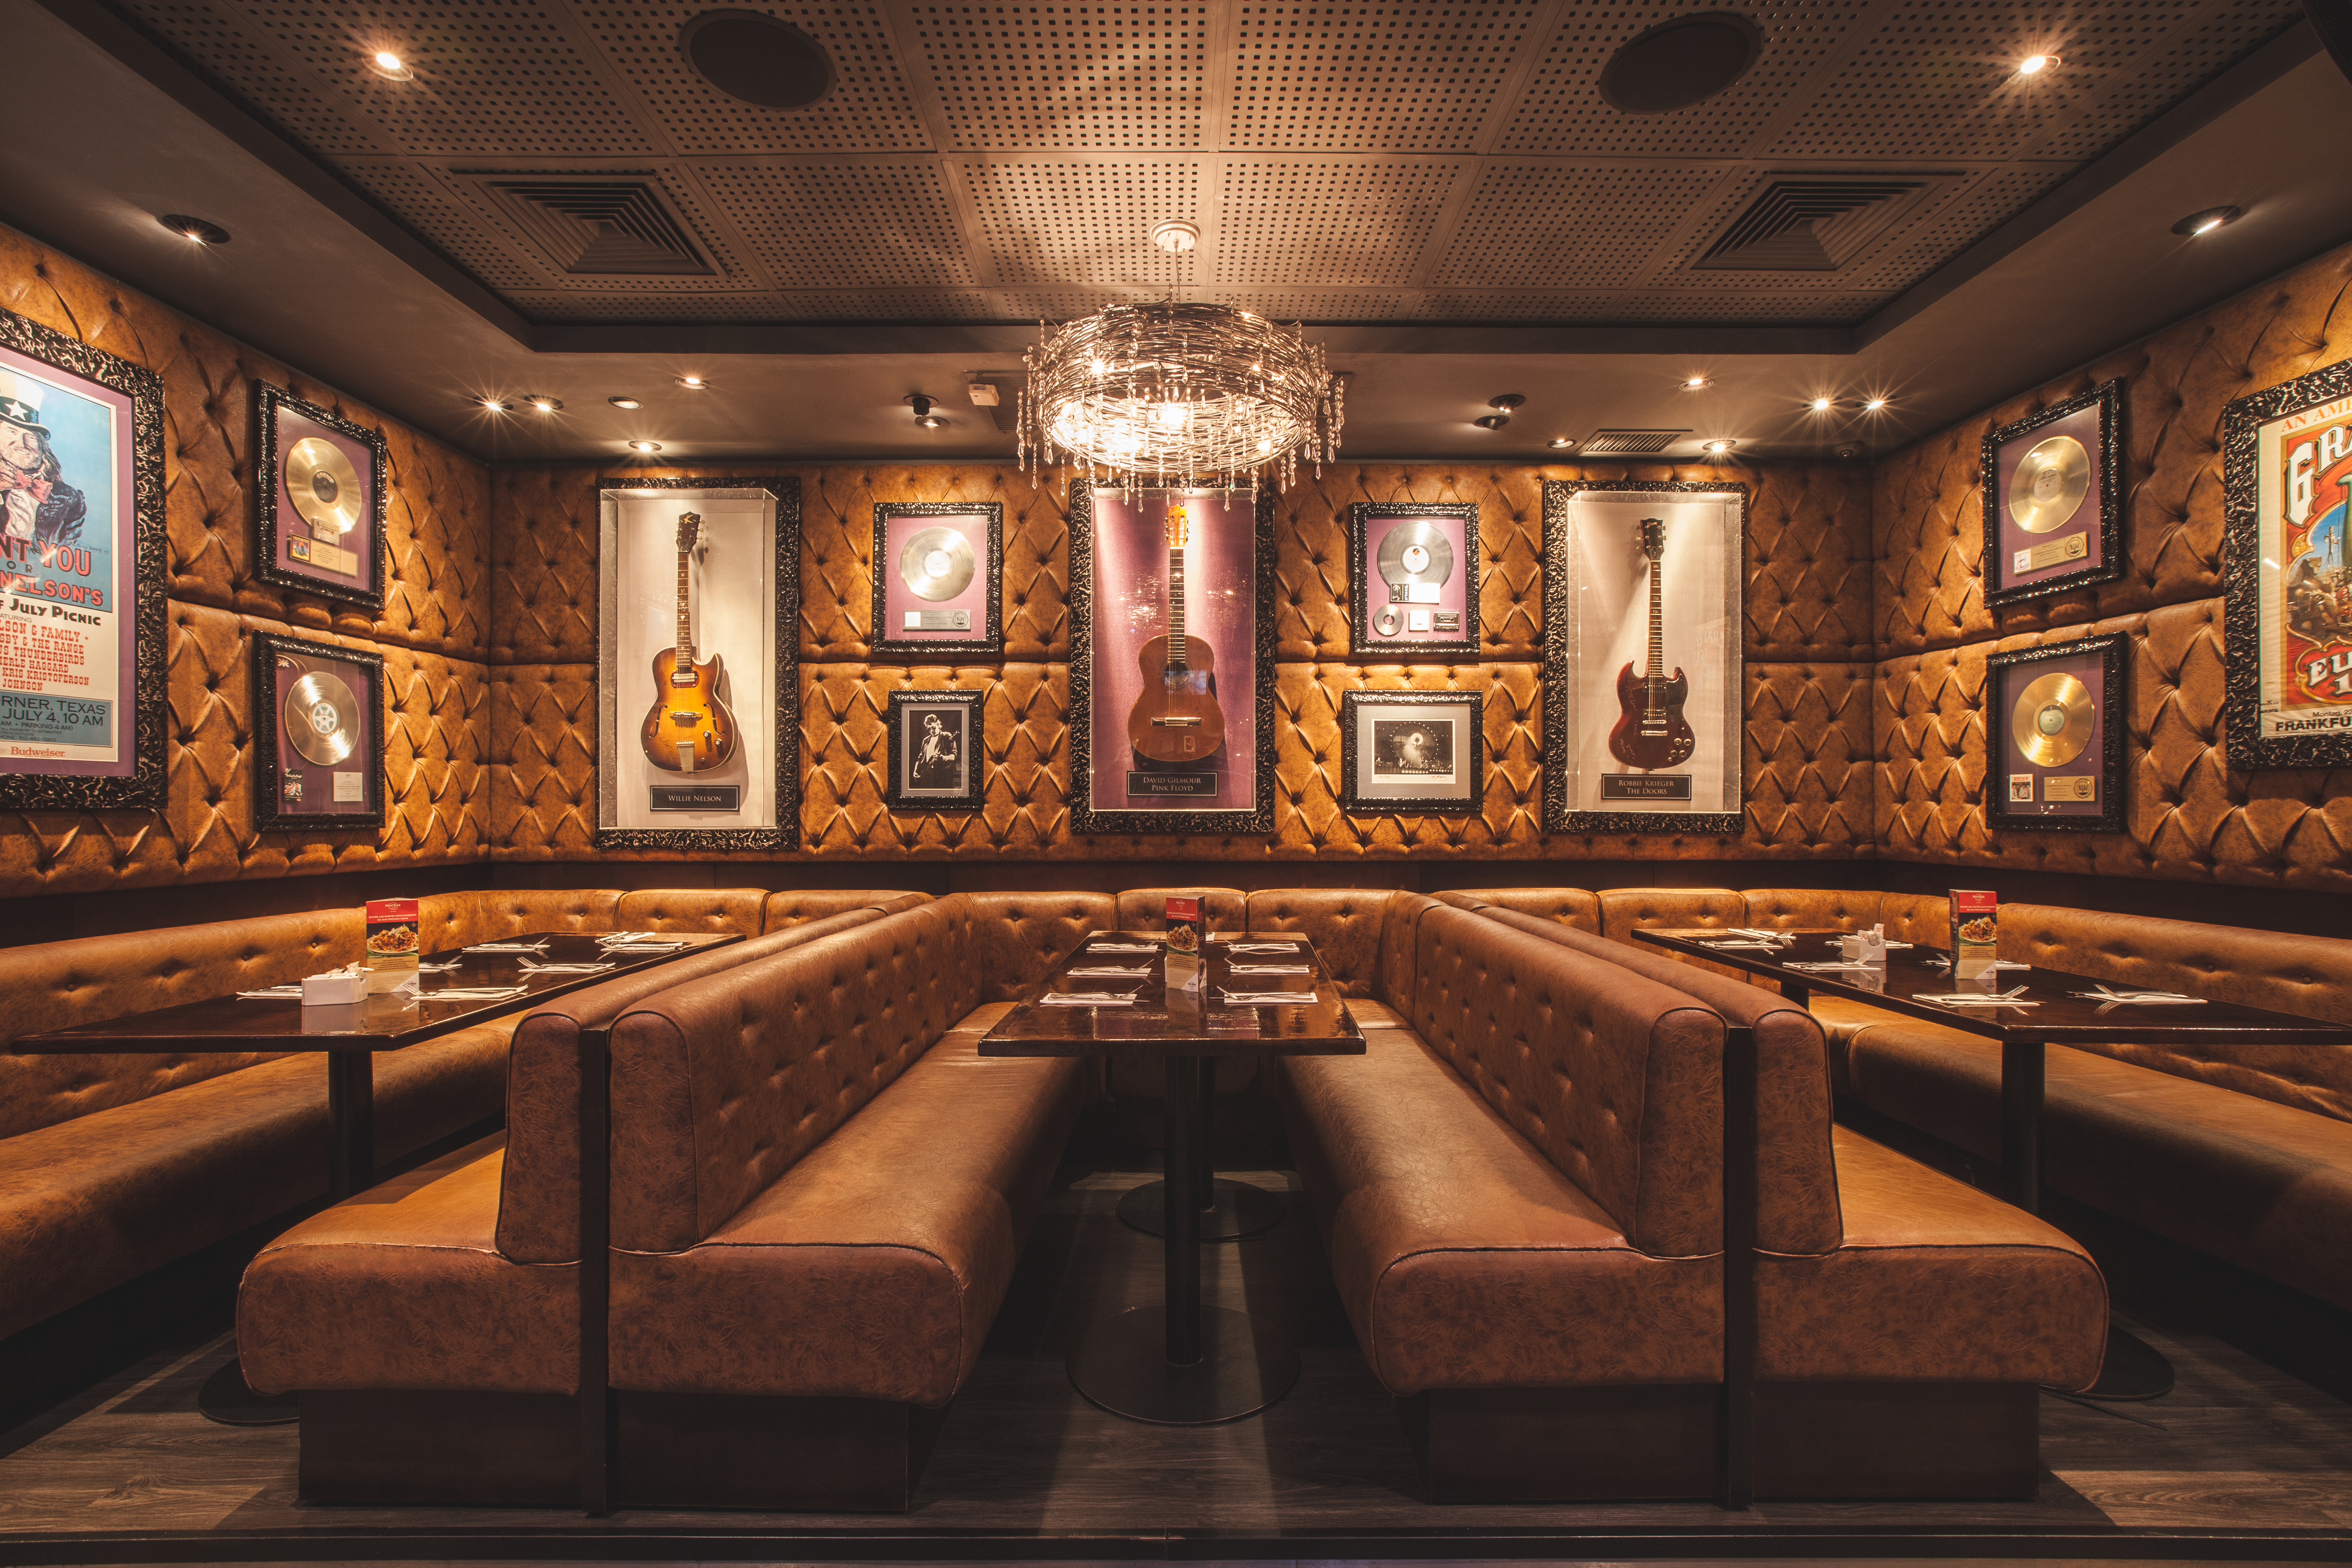 Hard Rock Café Fortaleza, 3º maior do mundo, terá 52 itens de artistas internacionais na décor